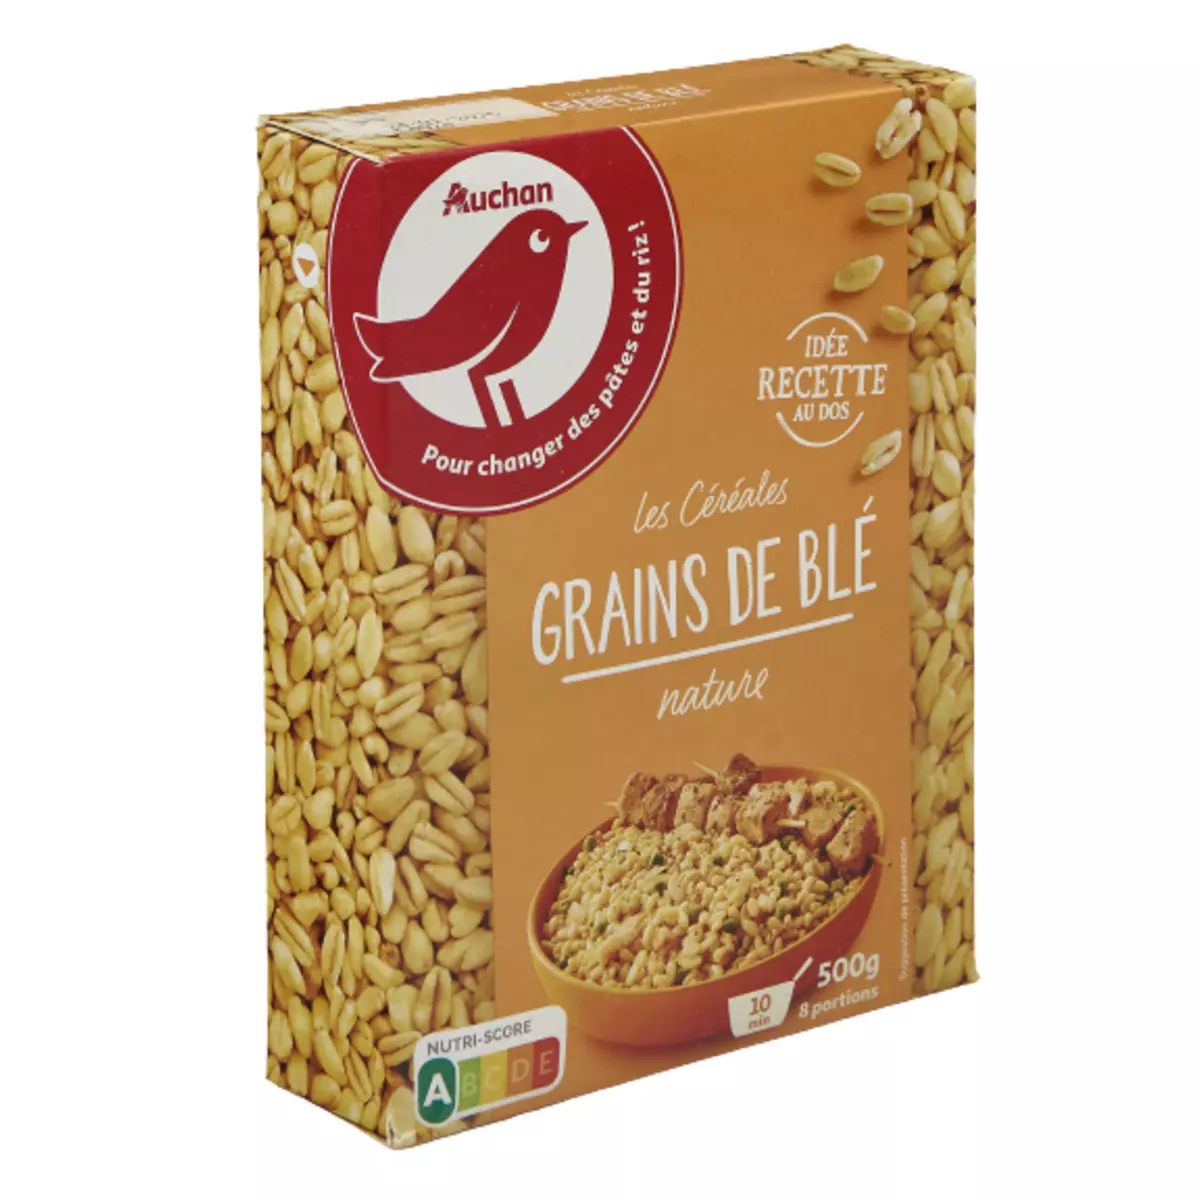 AUCHAN Grains de blé nature 8 portions 500g